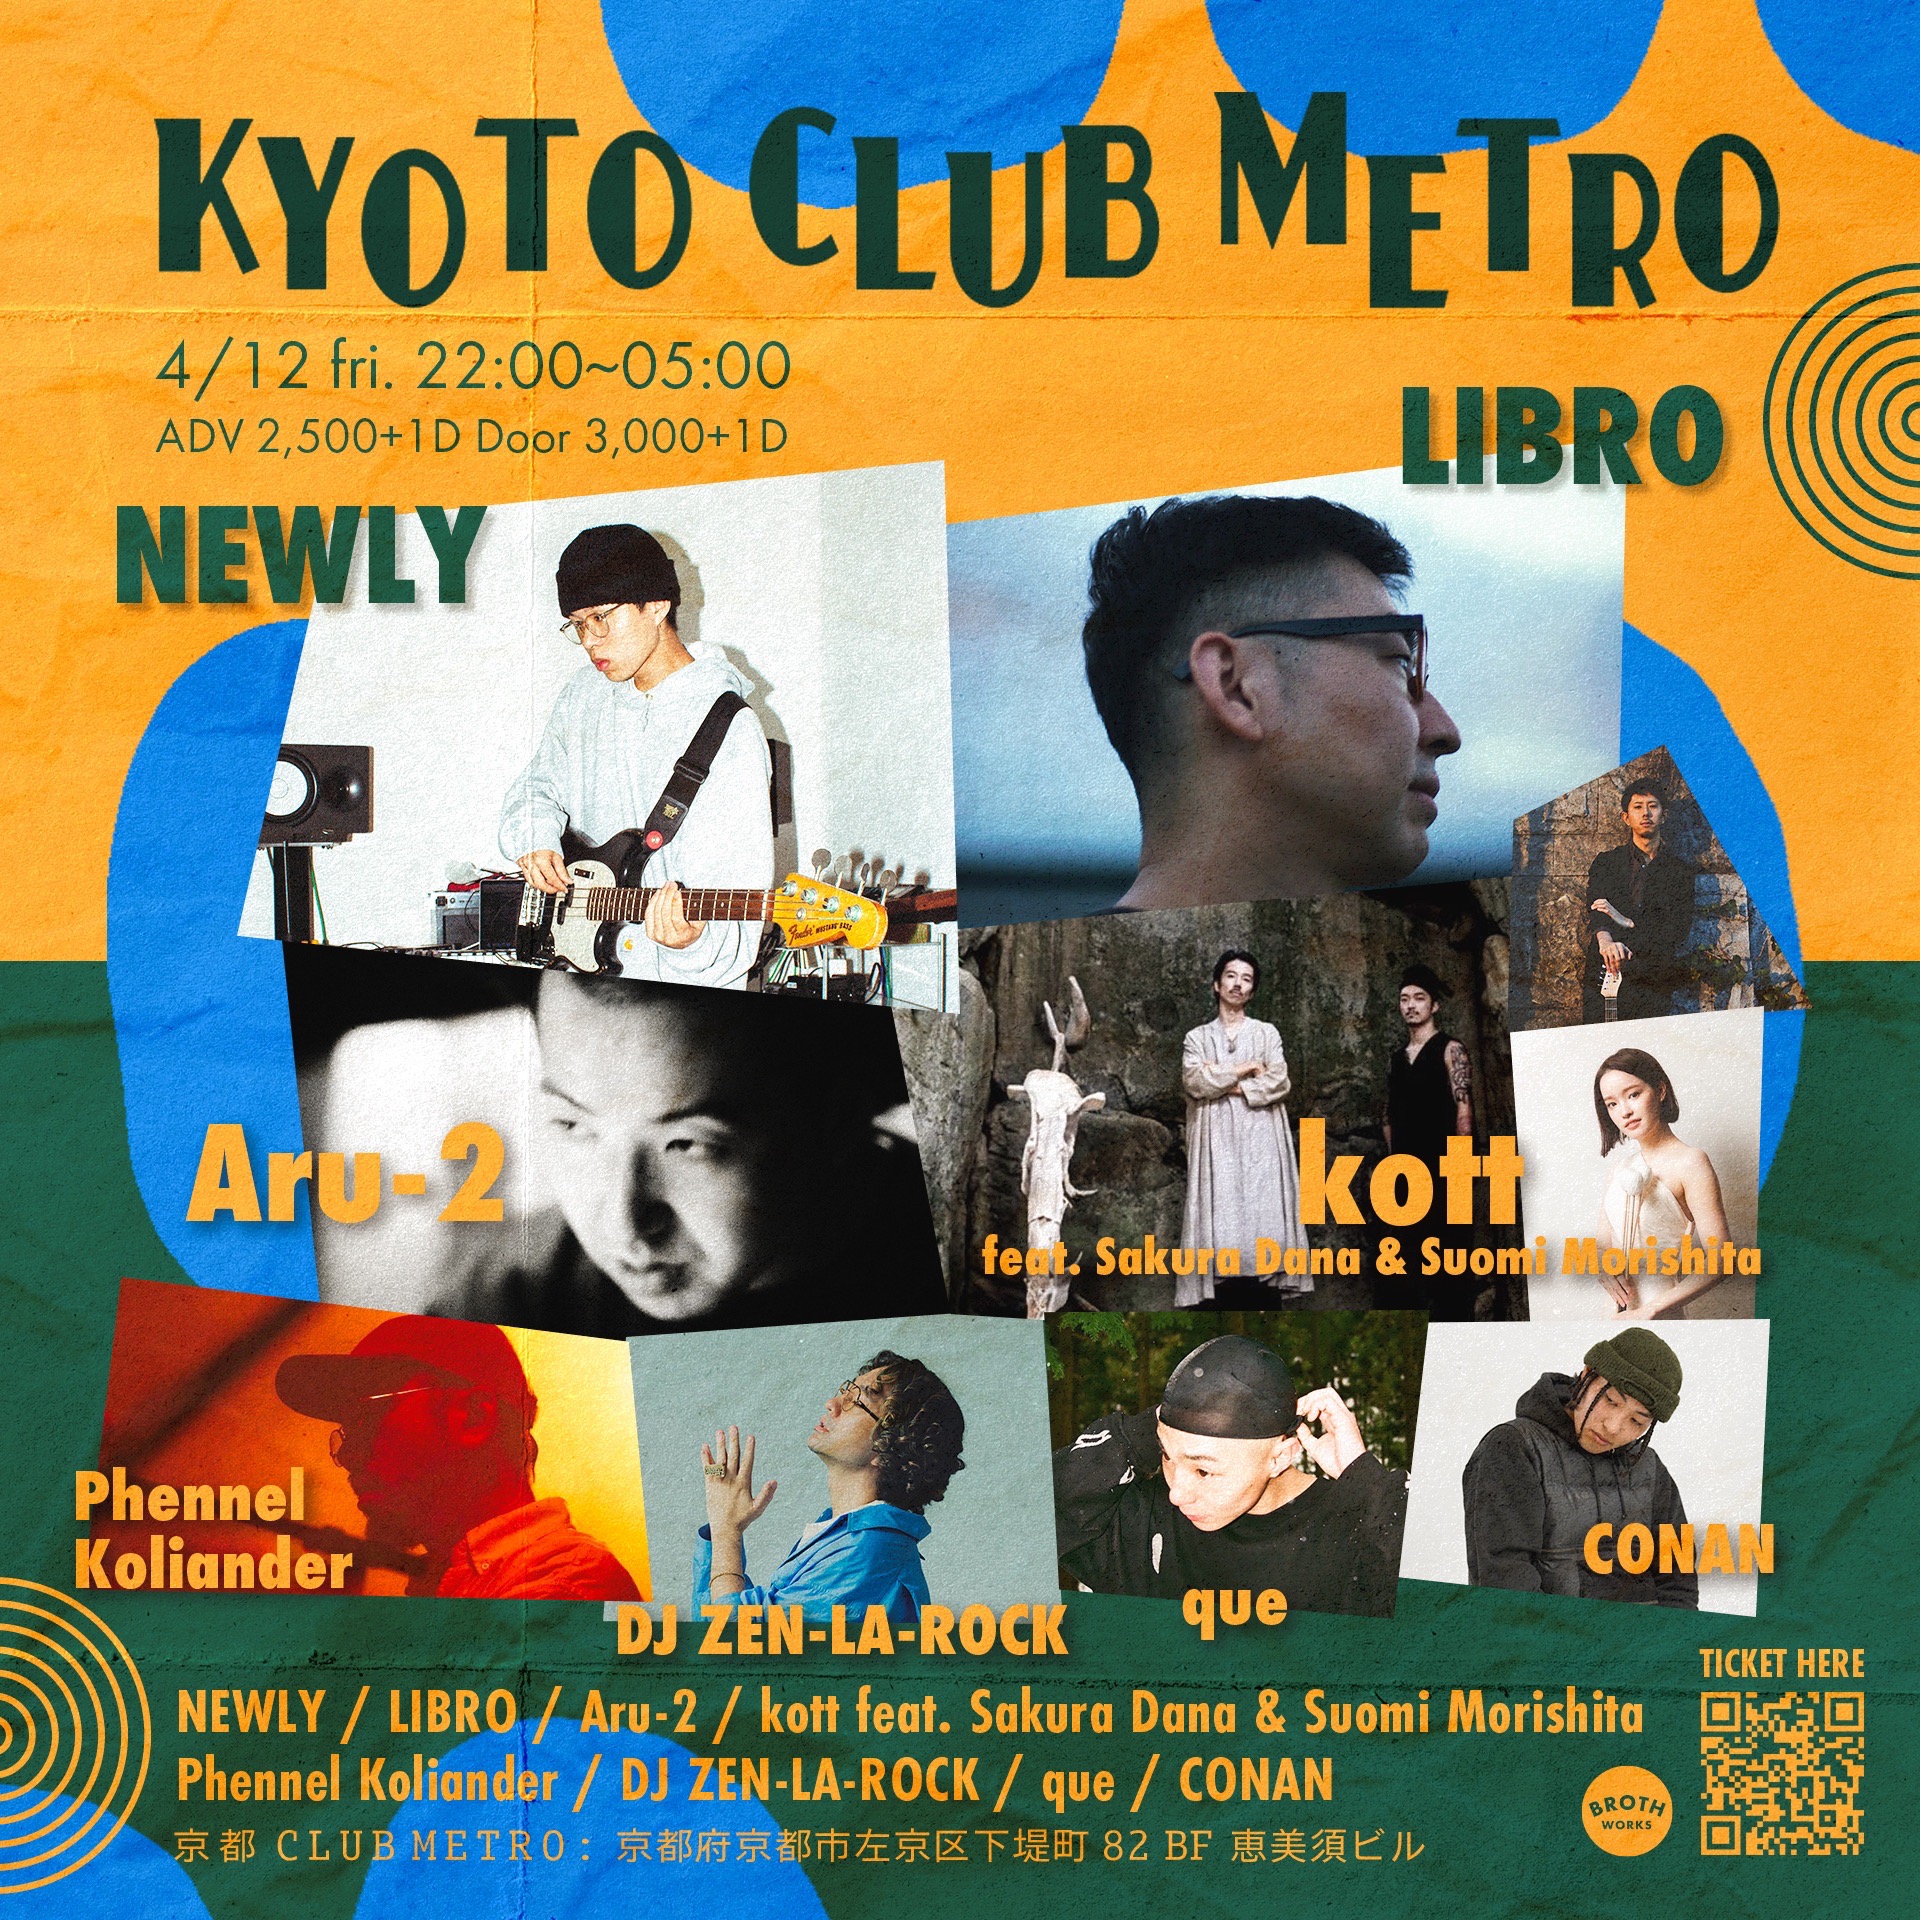 NEWLY, LIBRO, Aru-2, kott feat. Sakura Dana & Suomi Morishita 